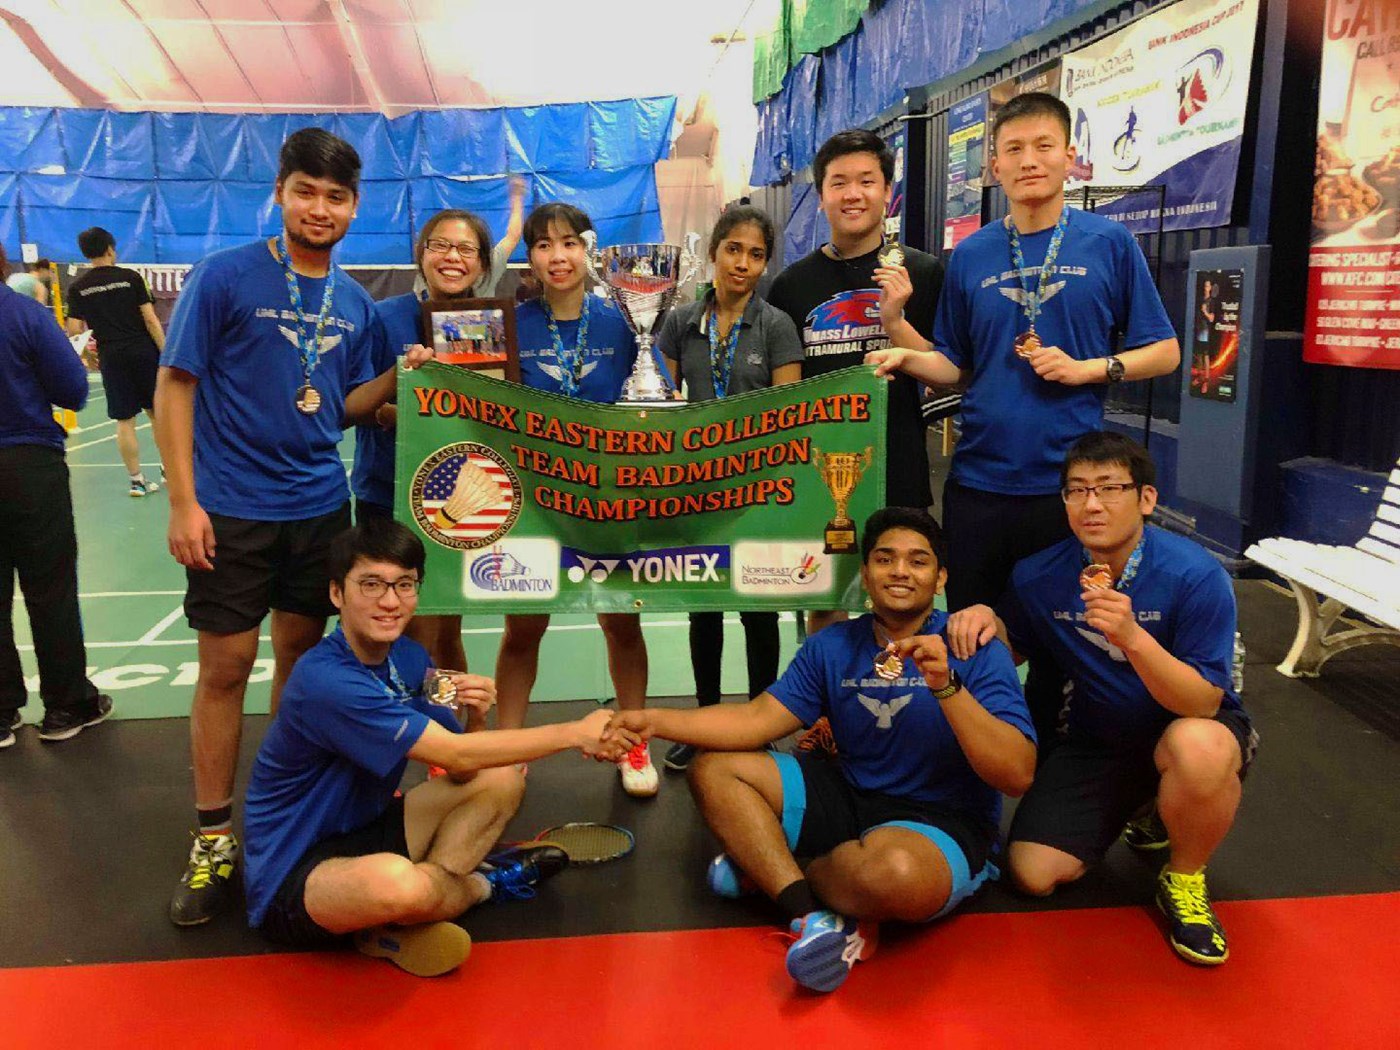 Badminton club celebrates tournament victors at indoor facility. 